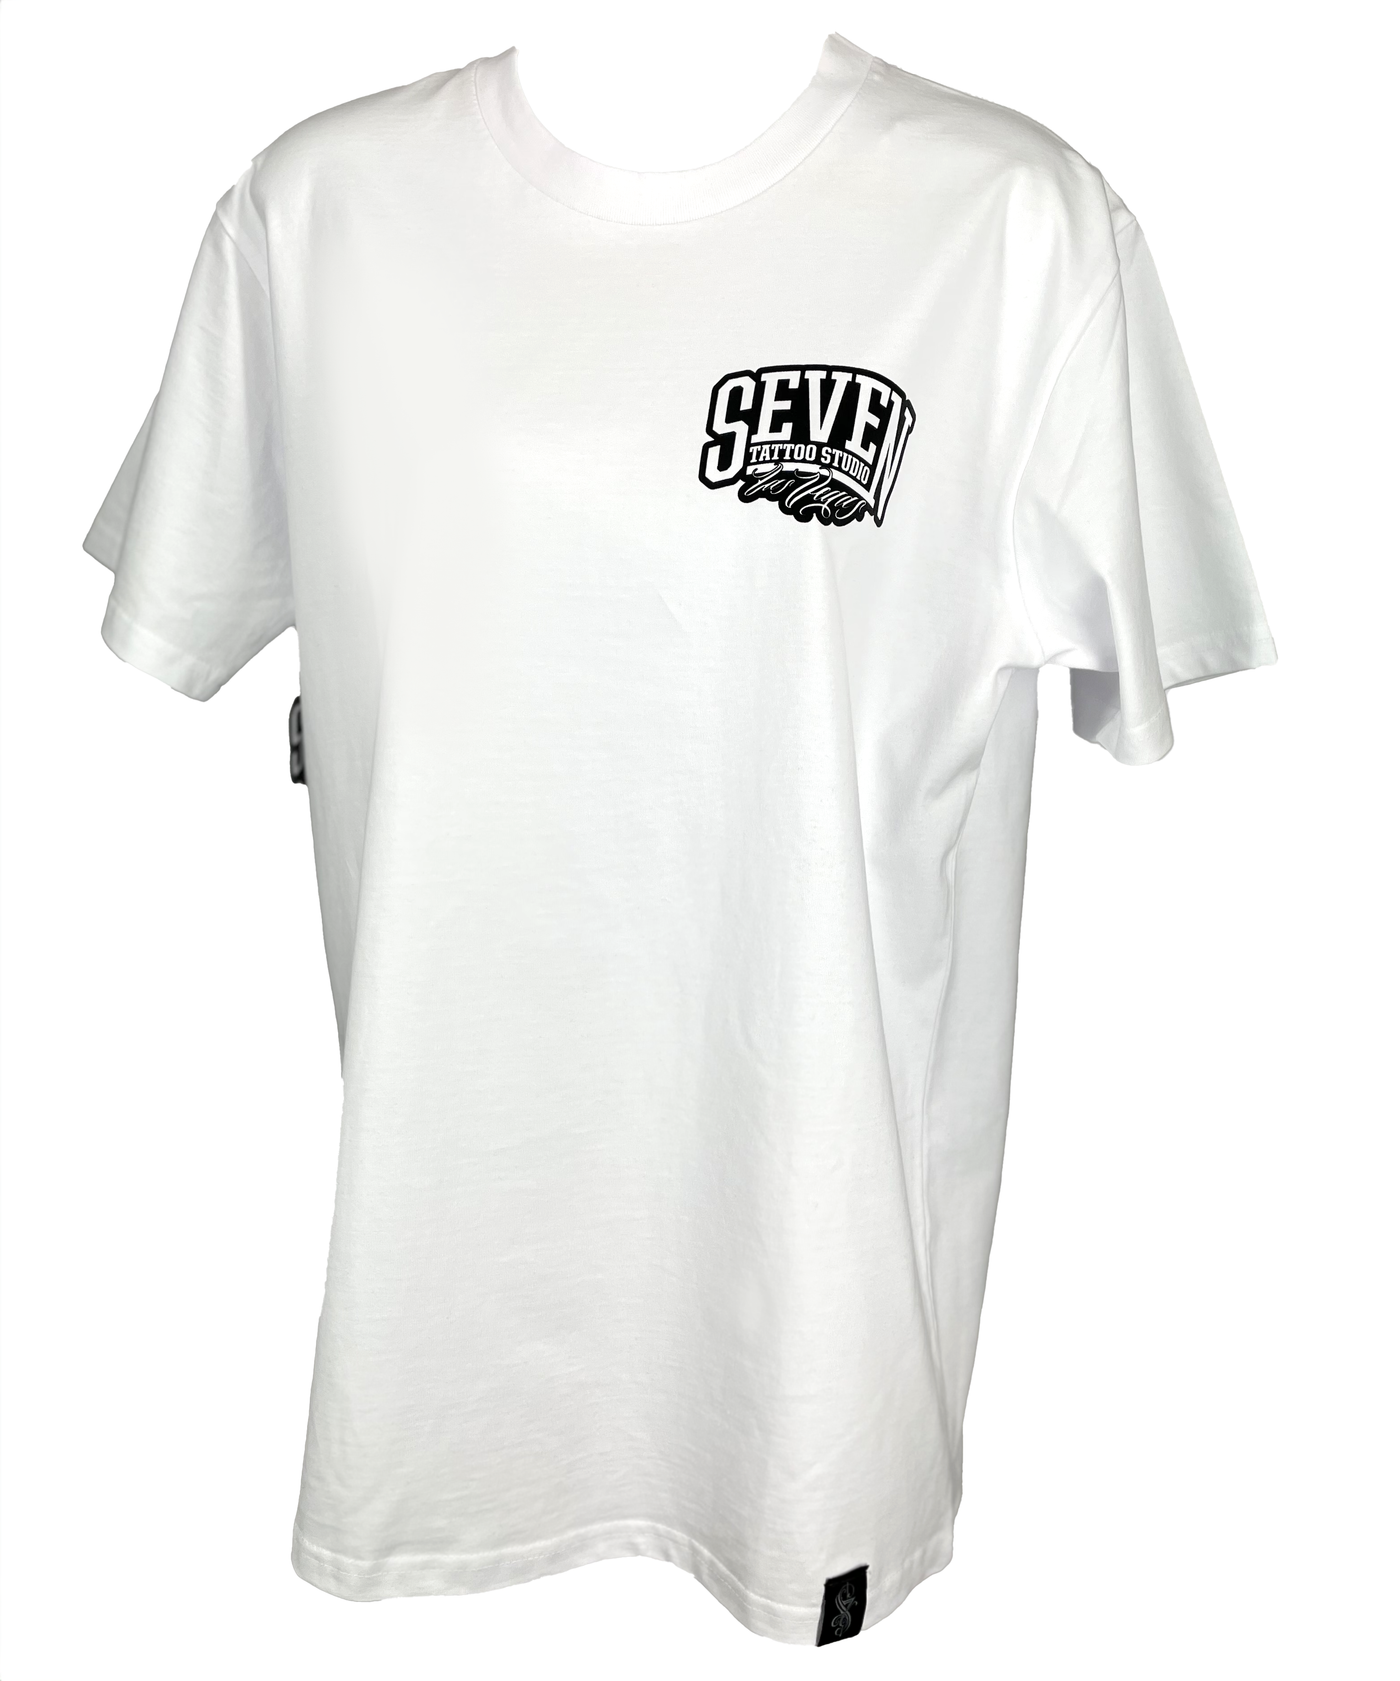 Seven White University Shirt